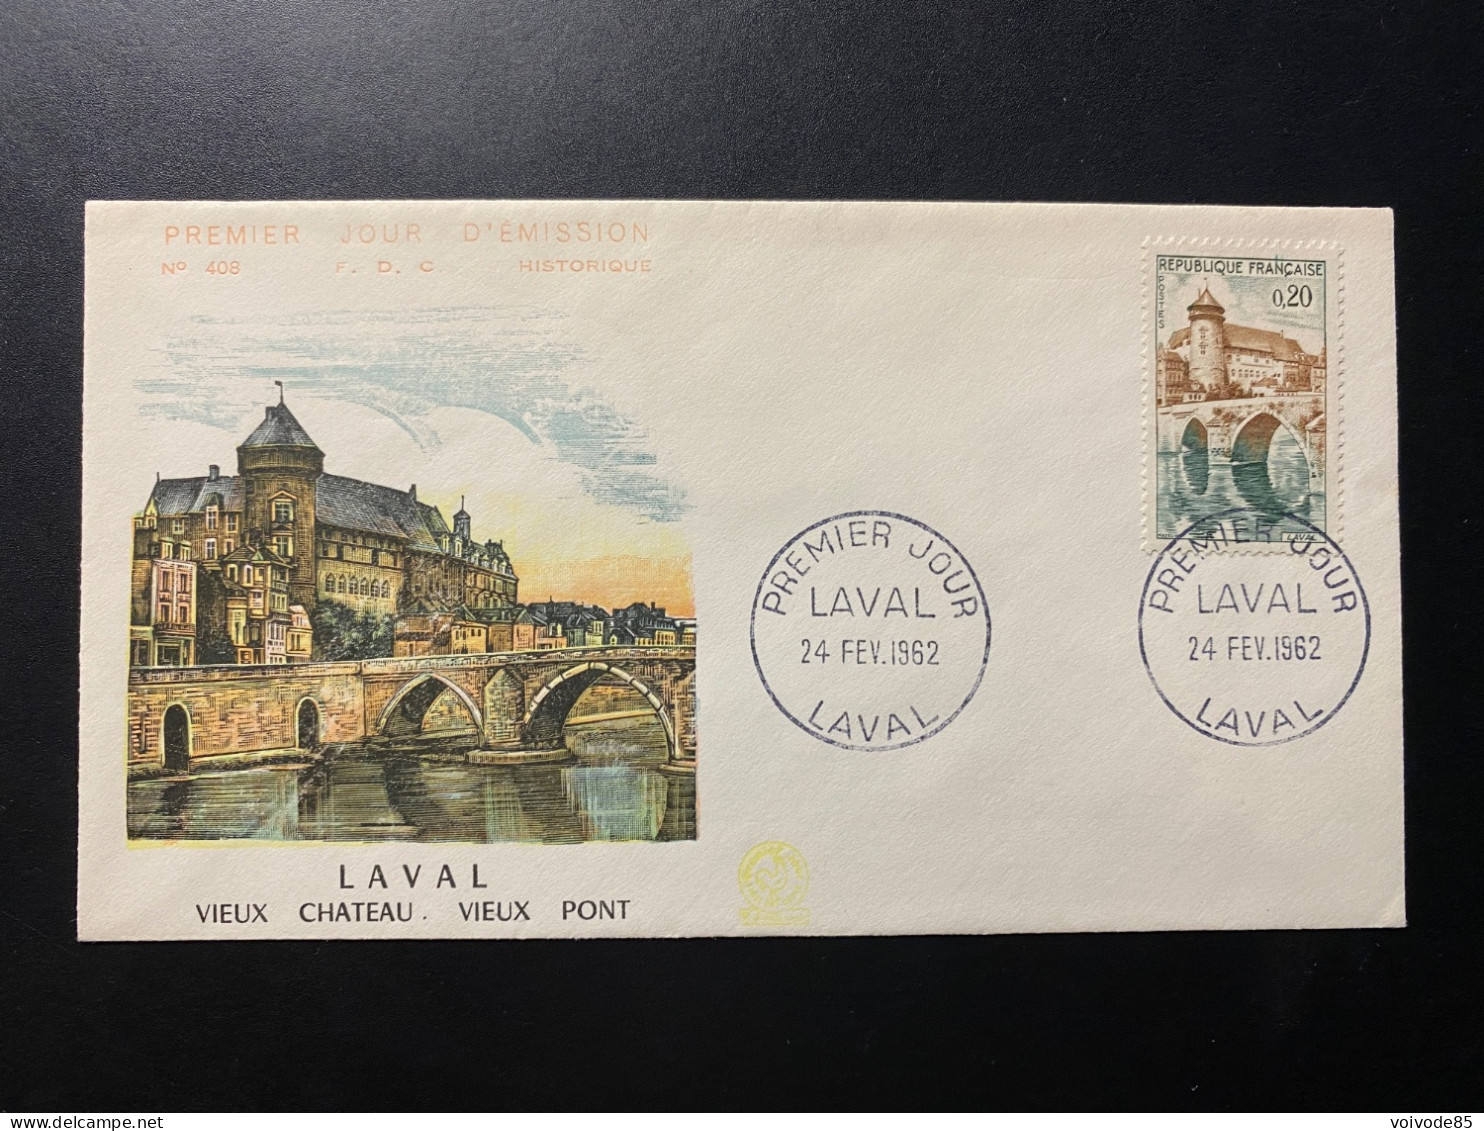 Enveloppe 1er Jour "Laval" - 24/02/1962 - 1330 - Historique N° 408 - 1960-1969